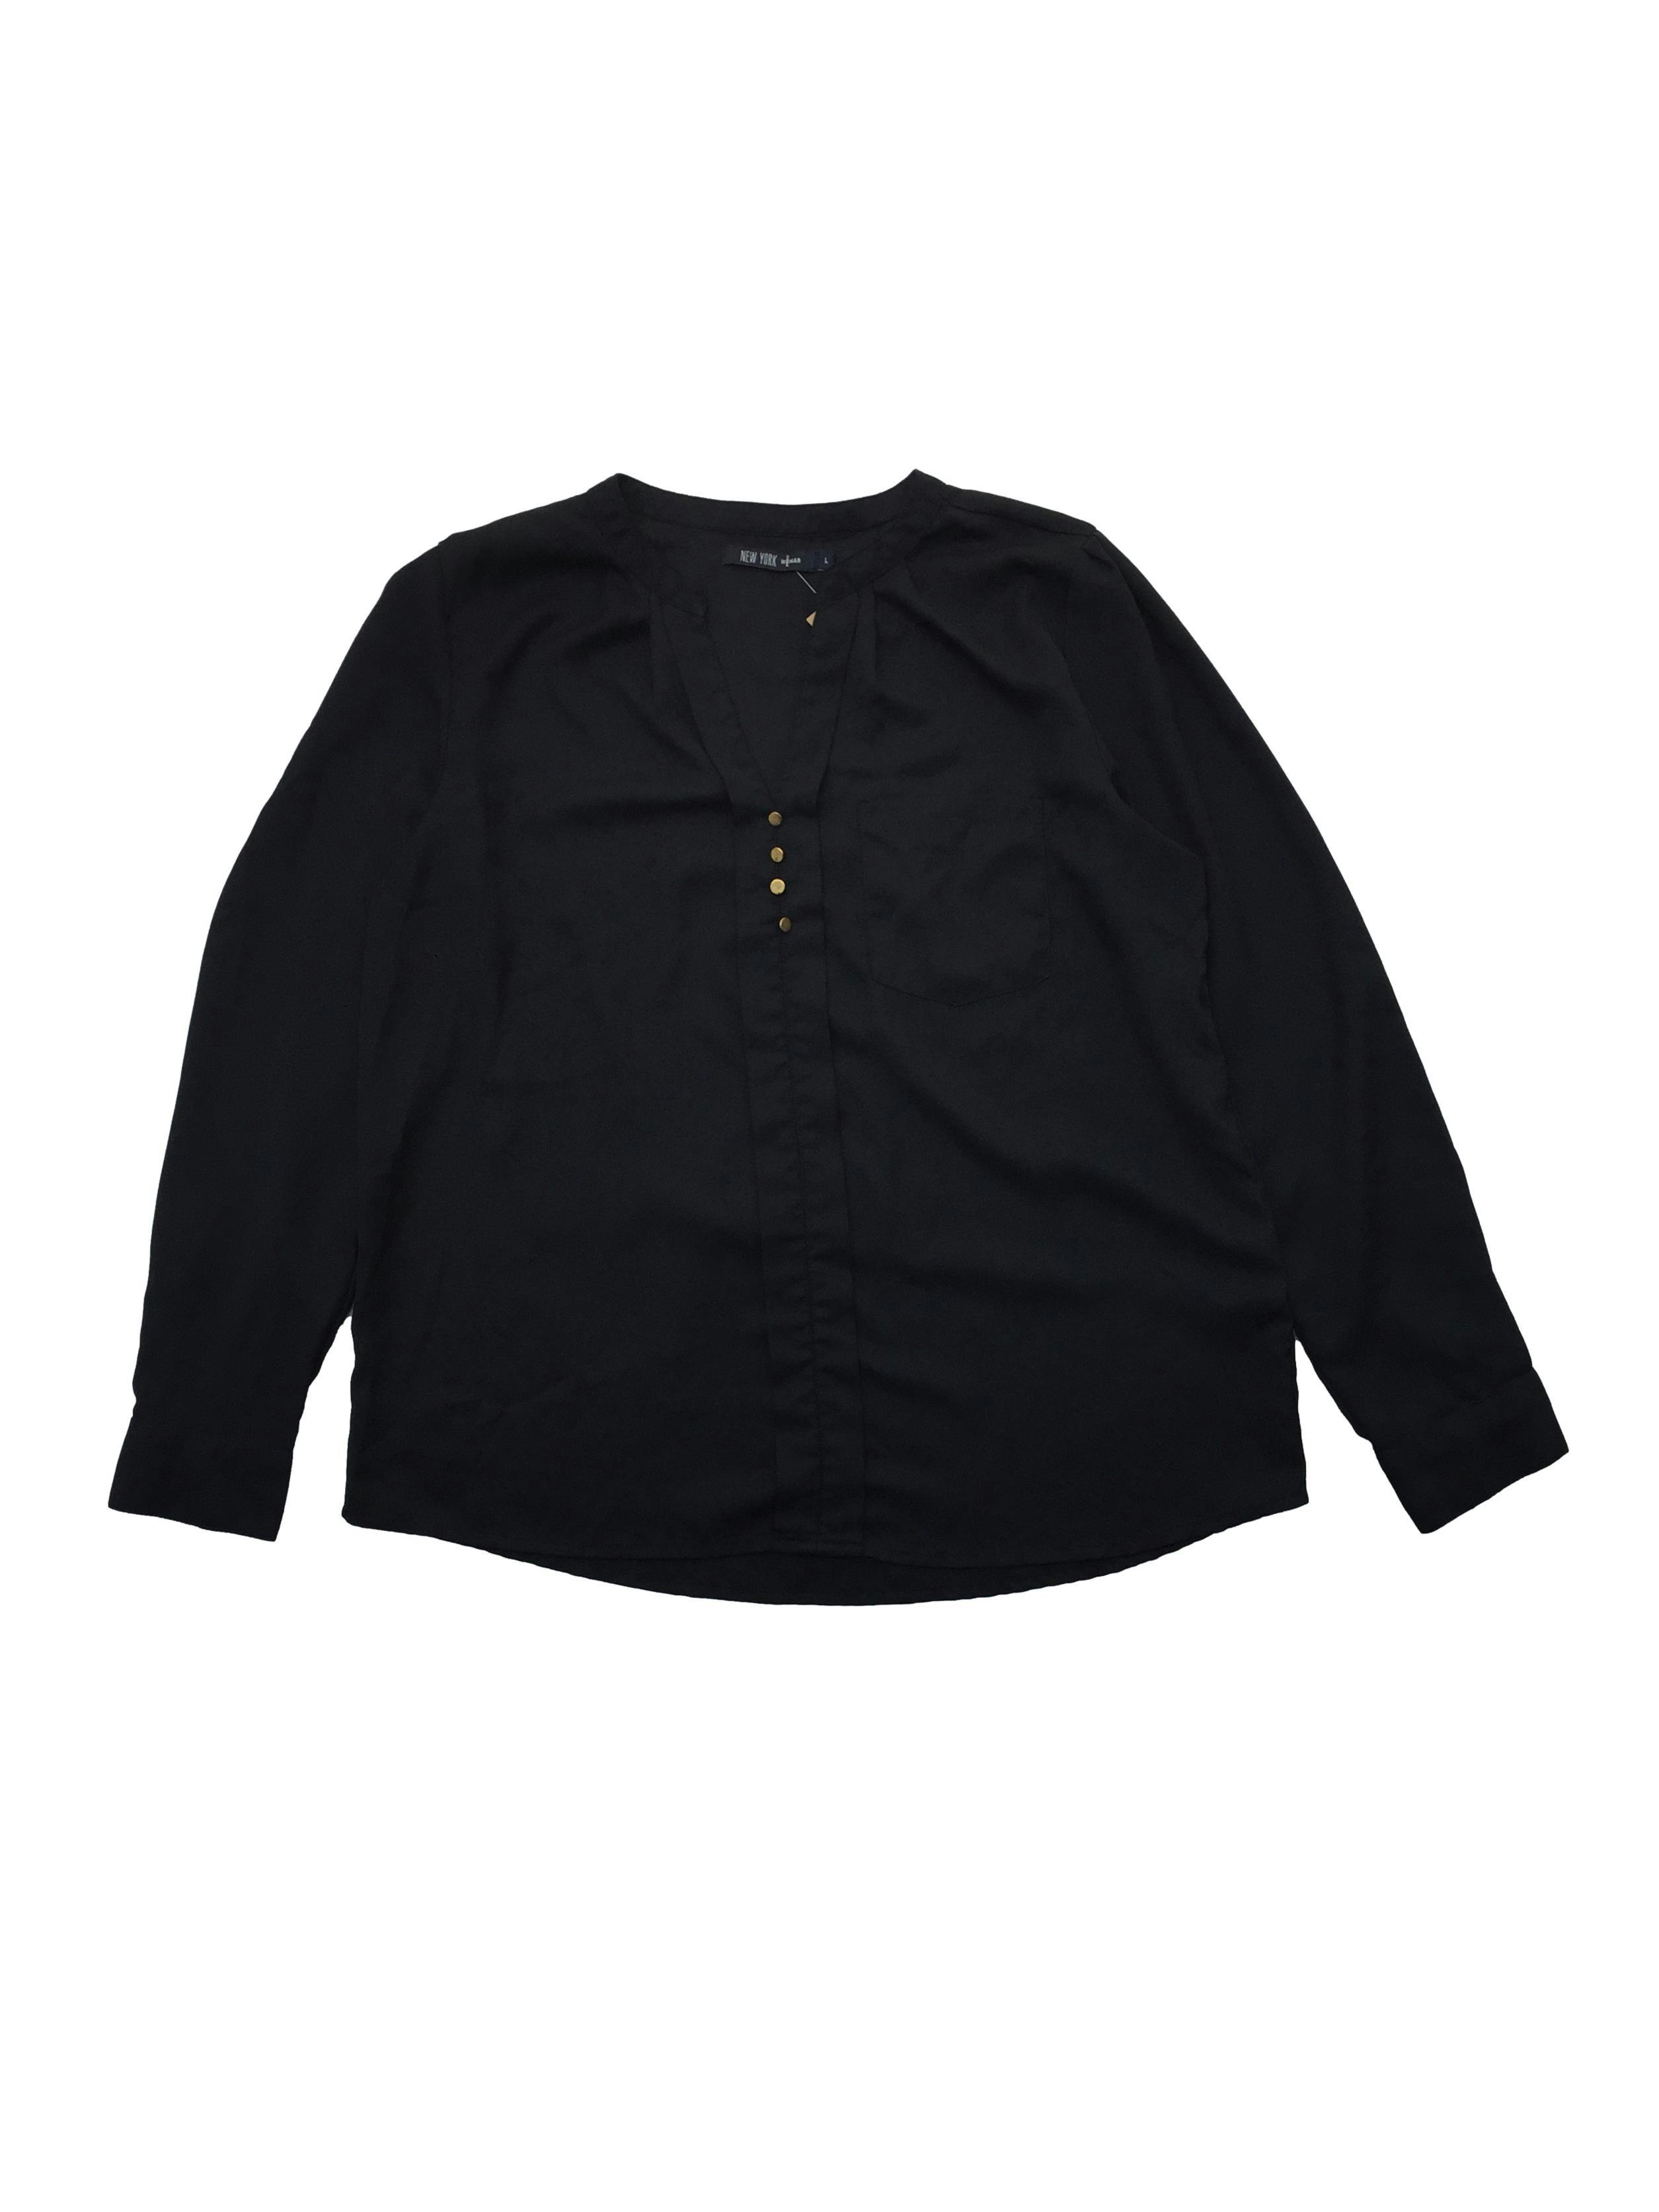 Blusa negra de gasa gruesa, escote en V con tablero, botones metálicos y bolsillo. Busto 104cm, Largo 60cm.